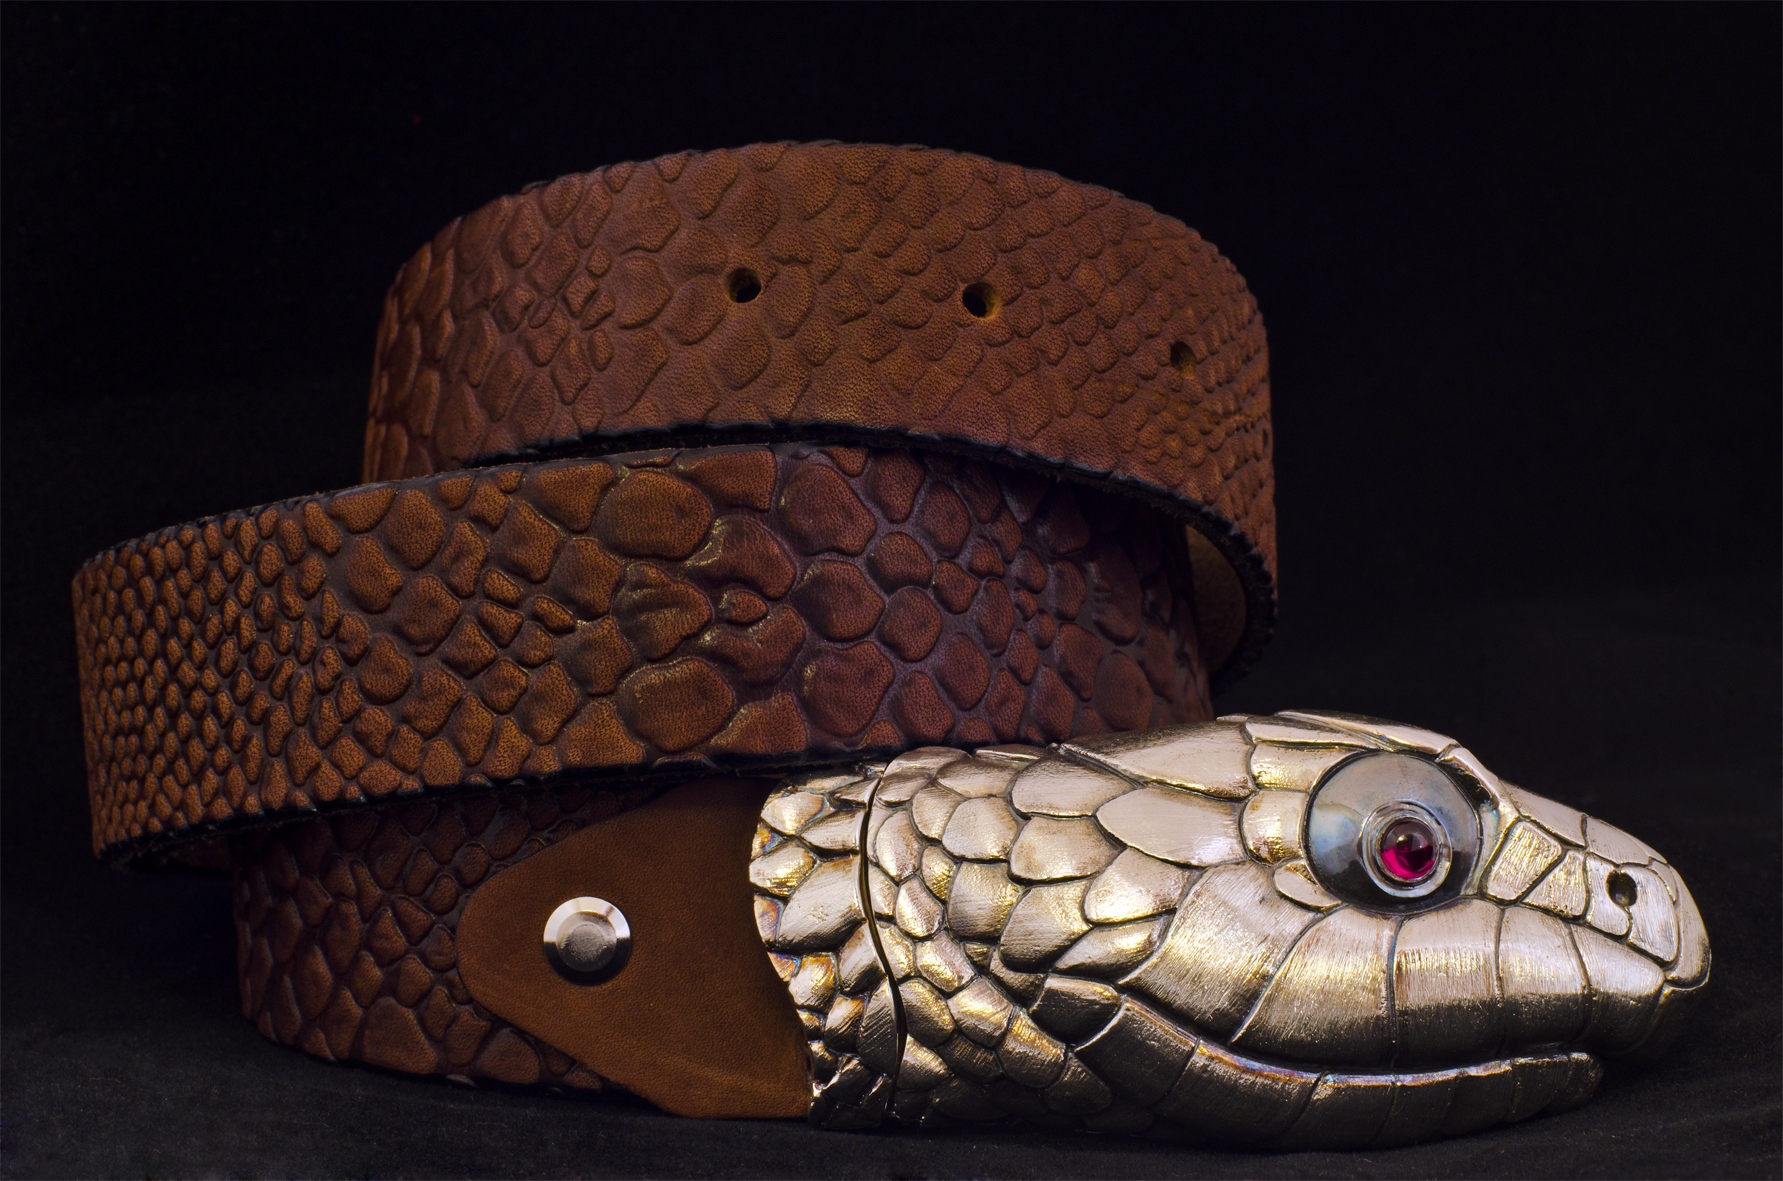 Ремень полоз. Ремень с пряжкой змея. Пояс из змеи с головой натуральный. Ремешок змея садовок ВК. Пряжка для ремня змей в форме восьмерки.